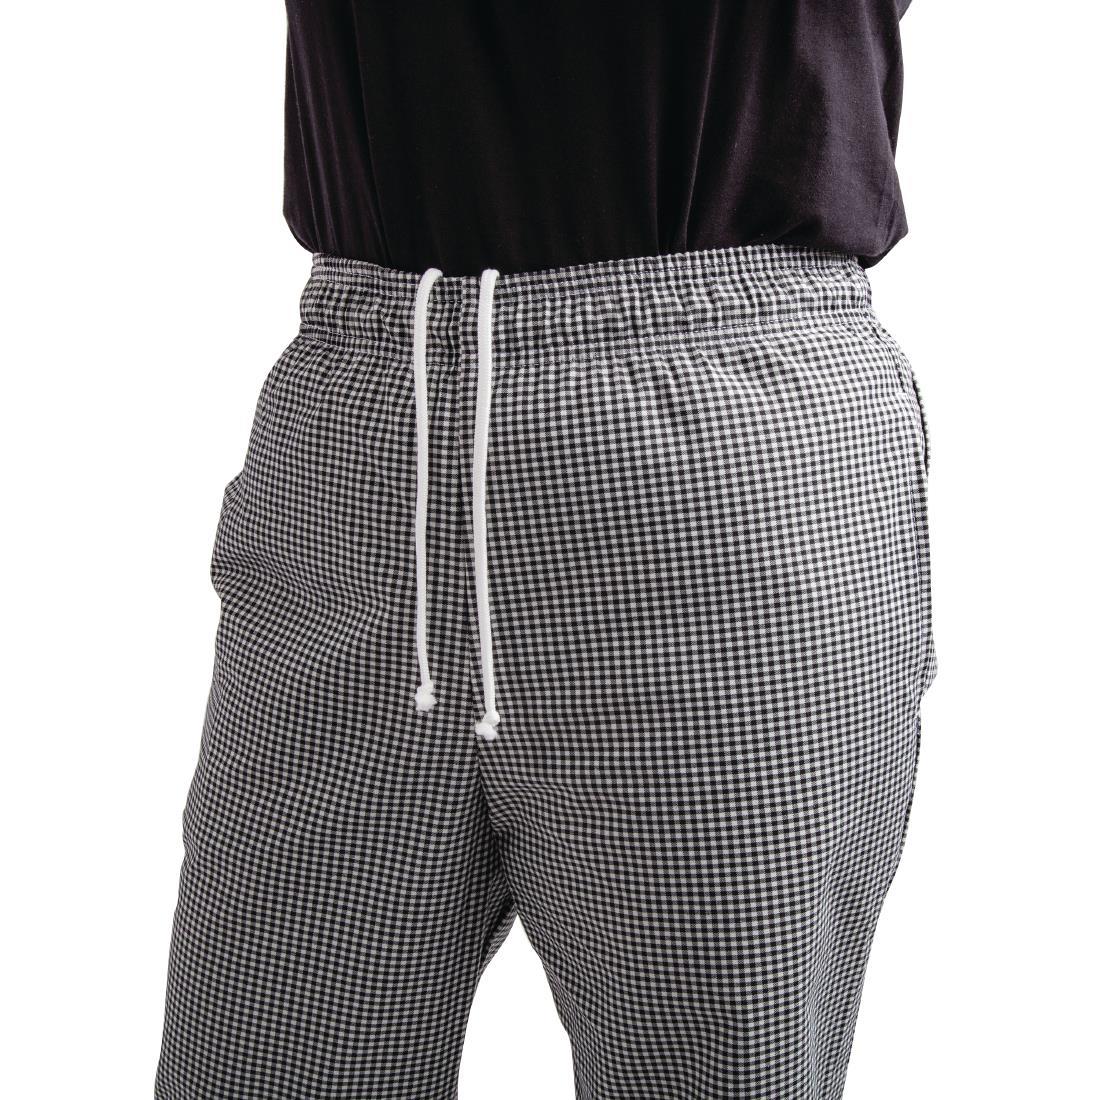 Whites Easyfit Trousers Teflon Black Check XL - A026T-XL  - 7